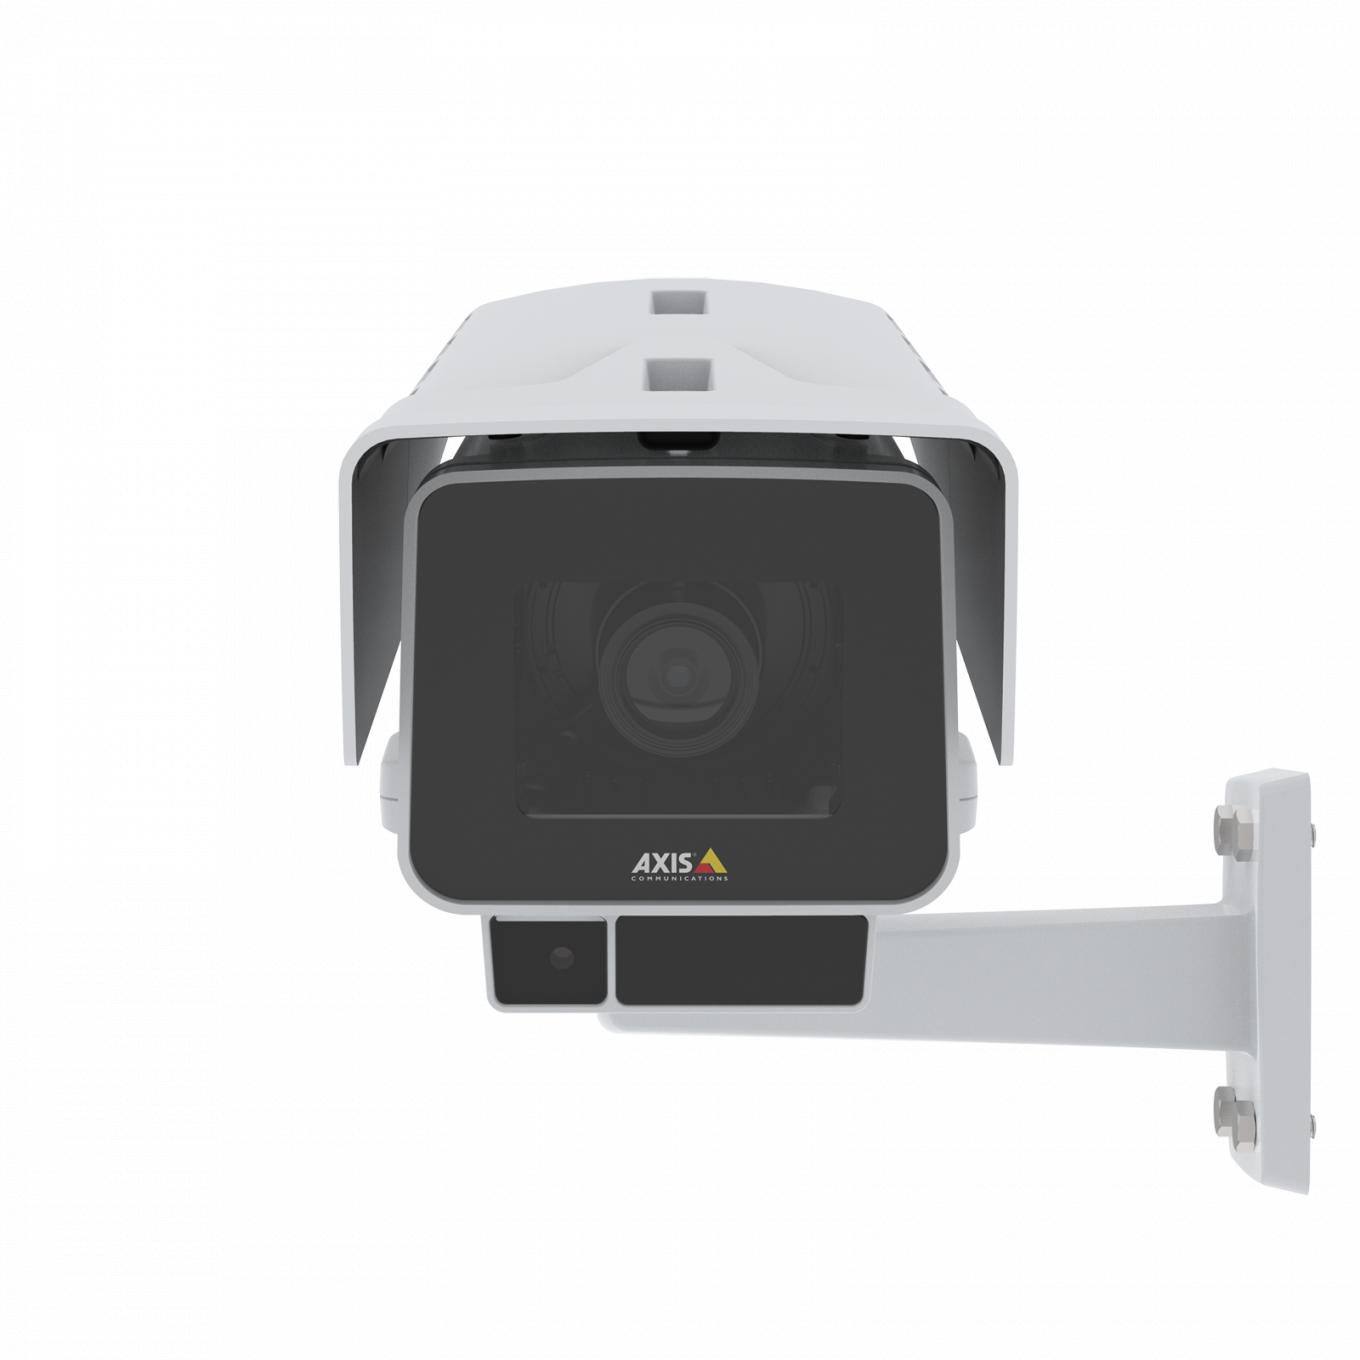 A AXIS P1378-LE IP Camera possui estabilização eletrônica de imagem e OptimizedIR. O produto é visto pela frente.